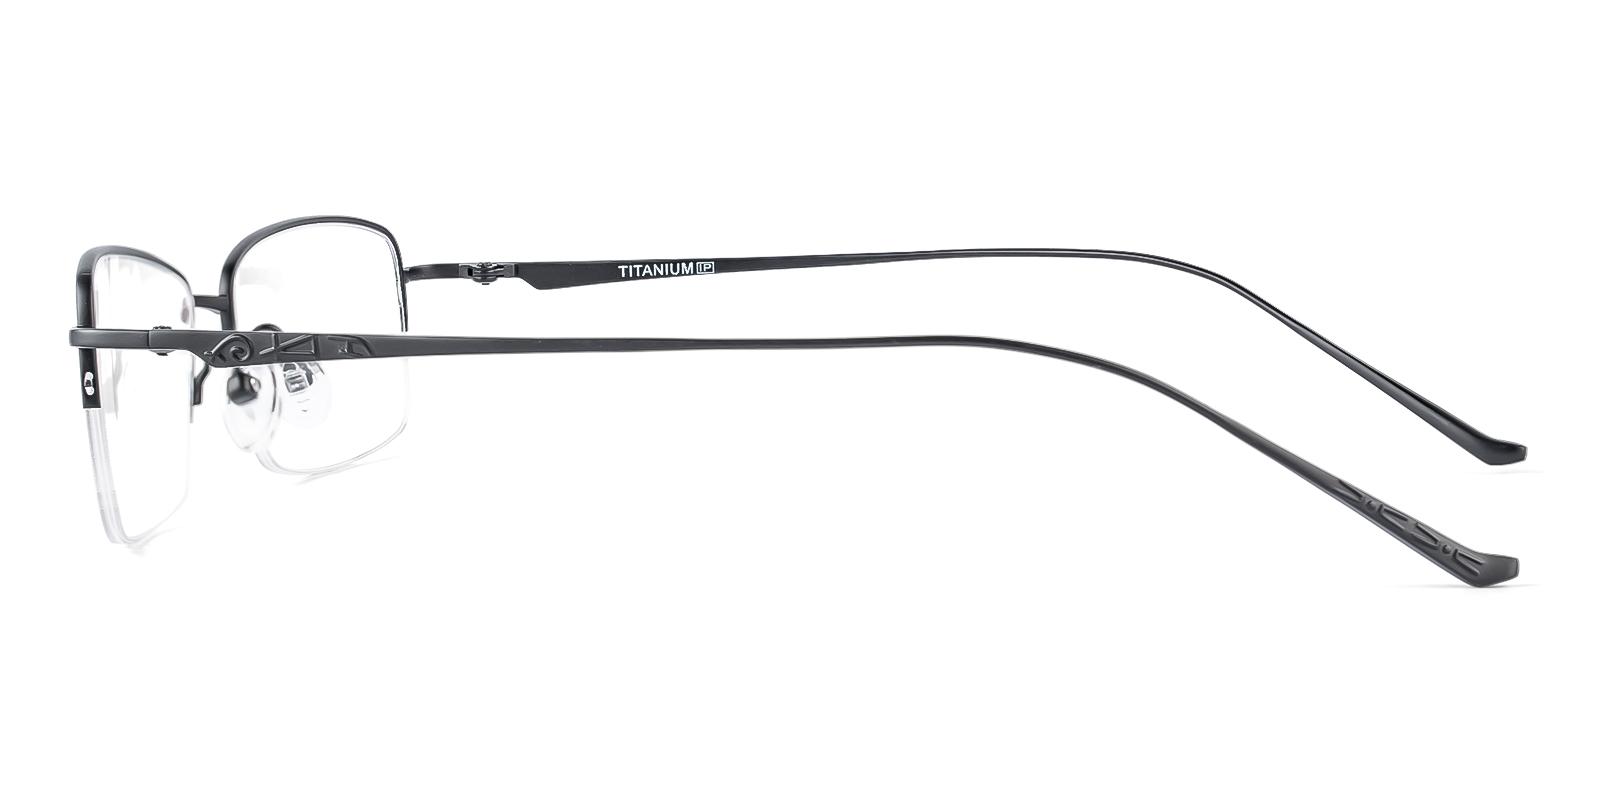 Yesior Black Titanium Eyeglasses , NosePads Frames from ABBE Glasses